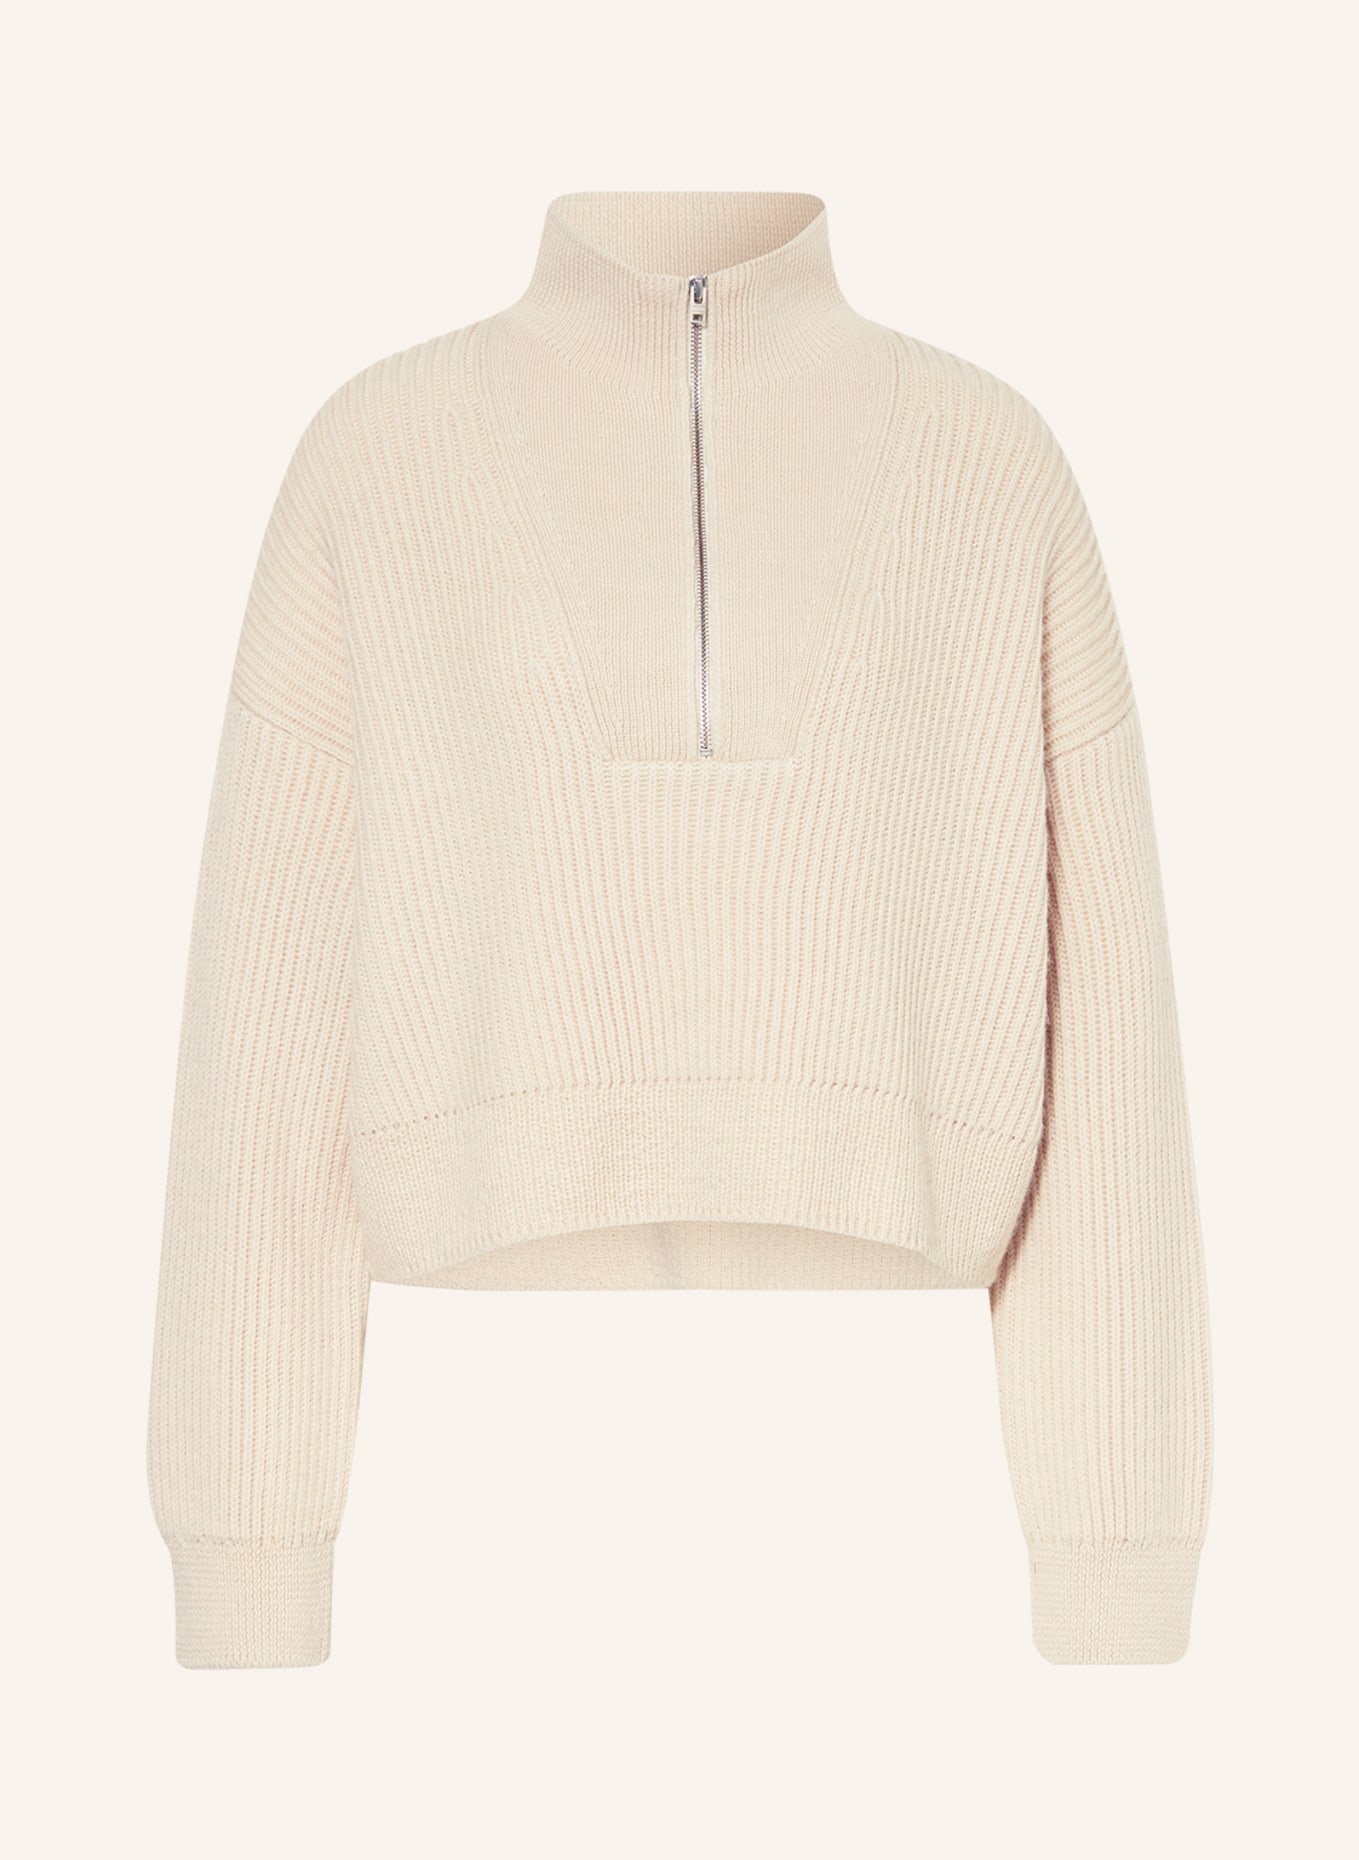 CLOSED Half-zip sweater, Color: CREAM (Image 1)